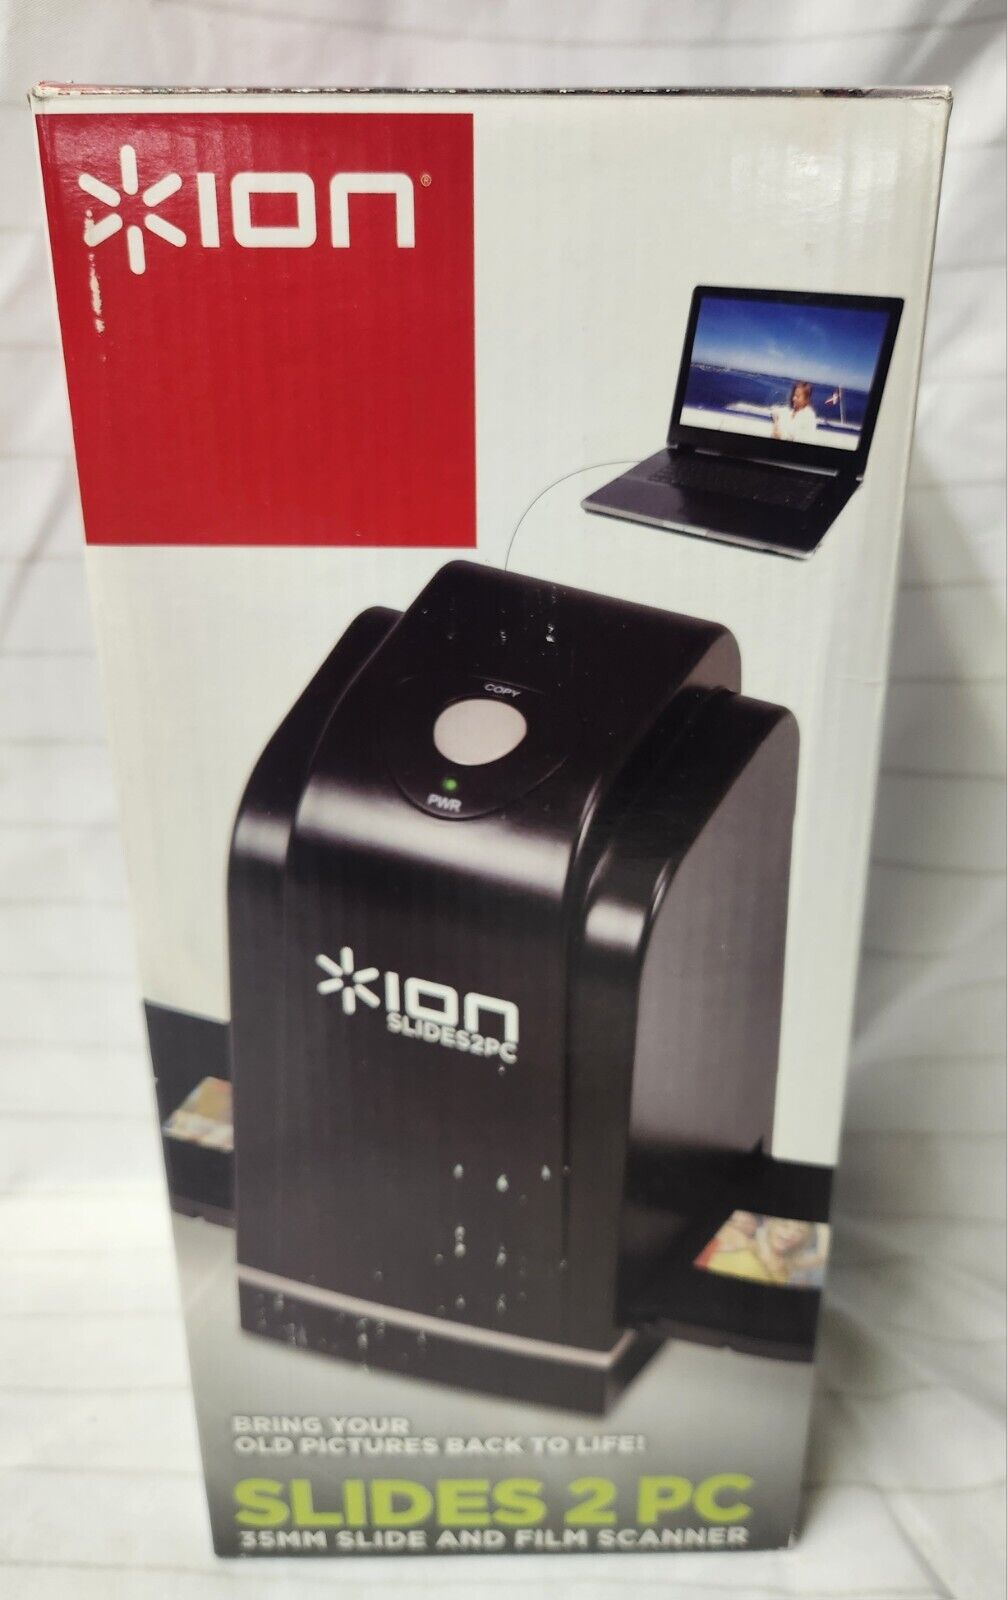 Ion Slides 2 PC 35mm Slide And Film Scanner